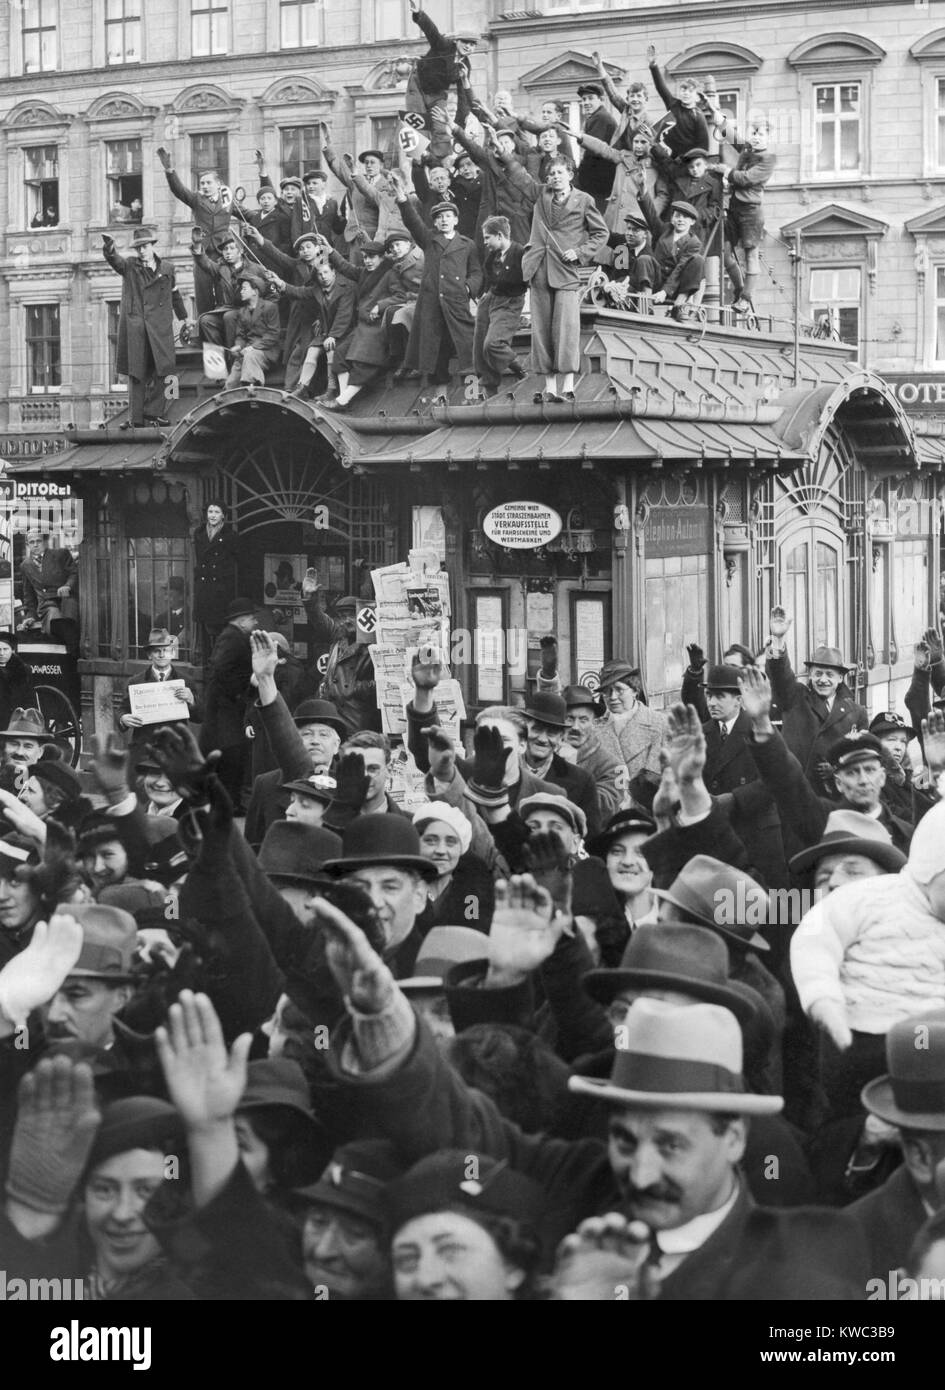 Hunderttausende Österreicher Linie der Route von Hitlers triumphalen Eintritt in Wien, Österreich. März 15, 1938. (BSLOC 2015 13 29) Stockfoto